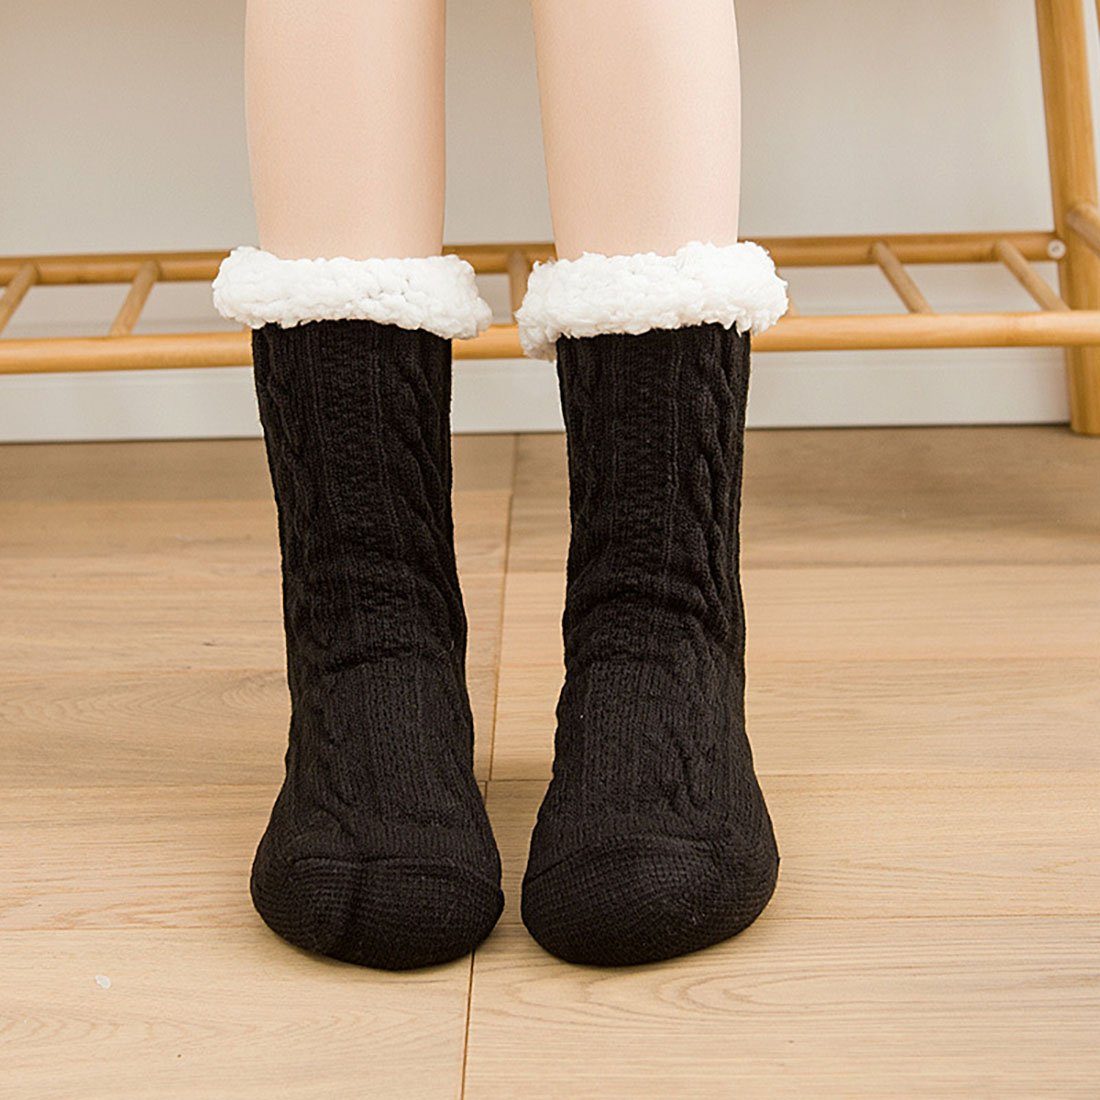 Hausschuhe Damen Socken Winter Warme Dicke Schwarz CTGtree Socken